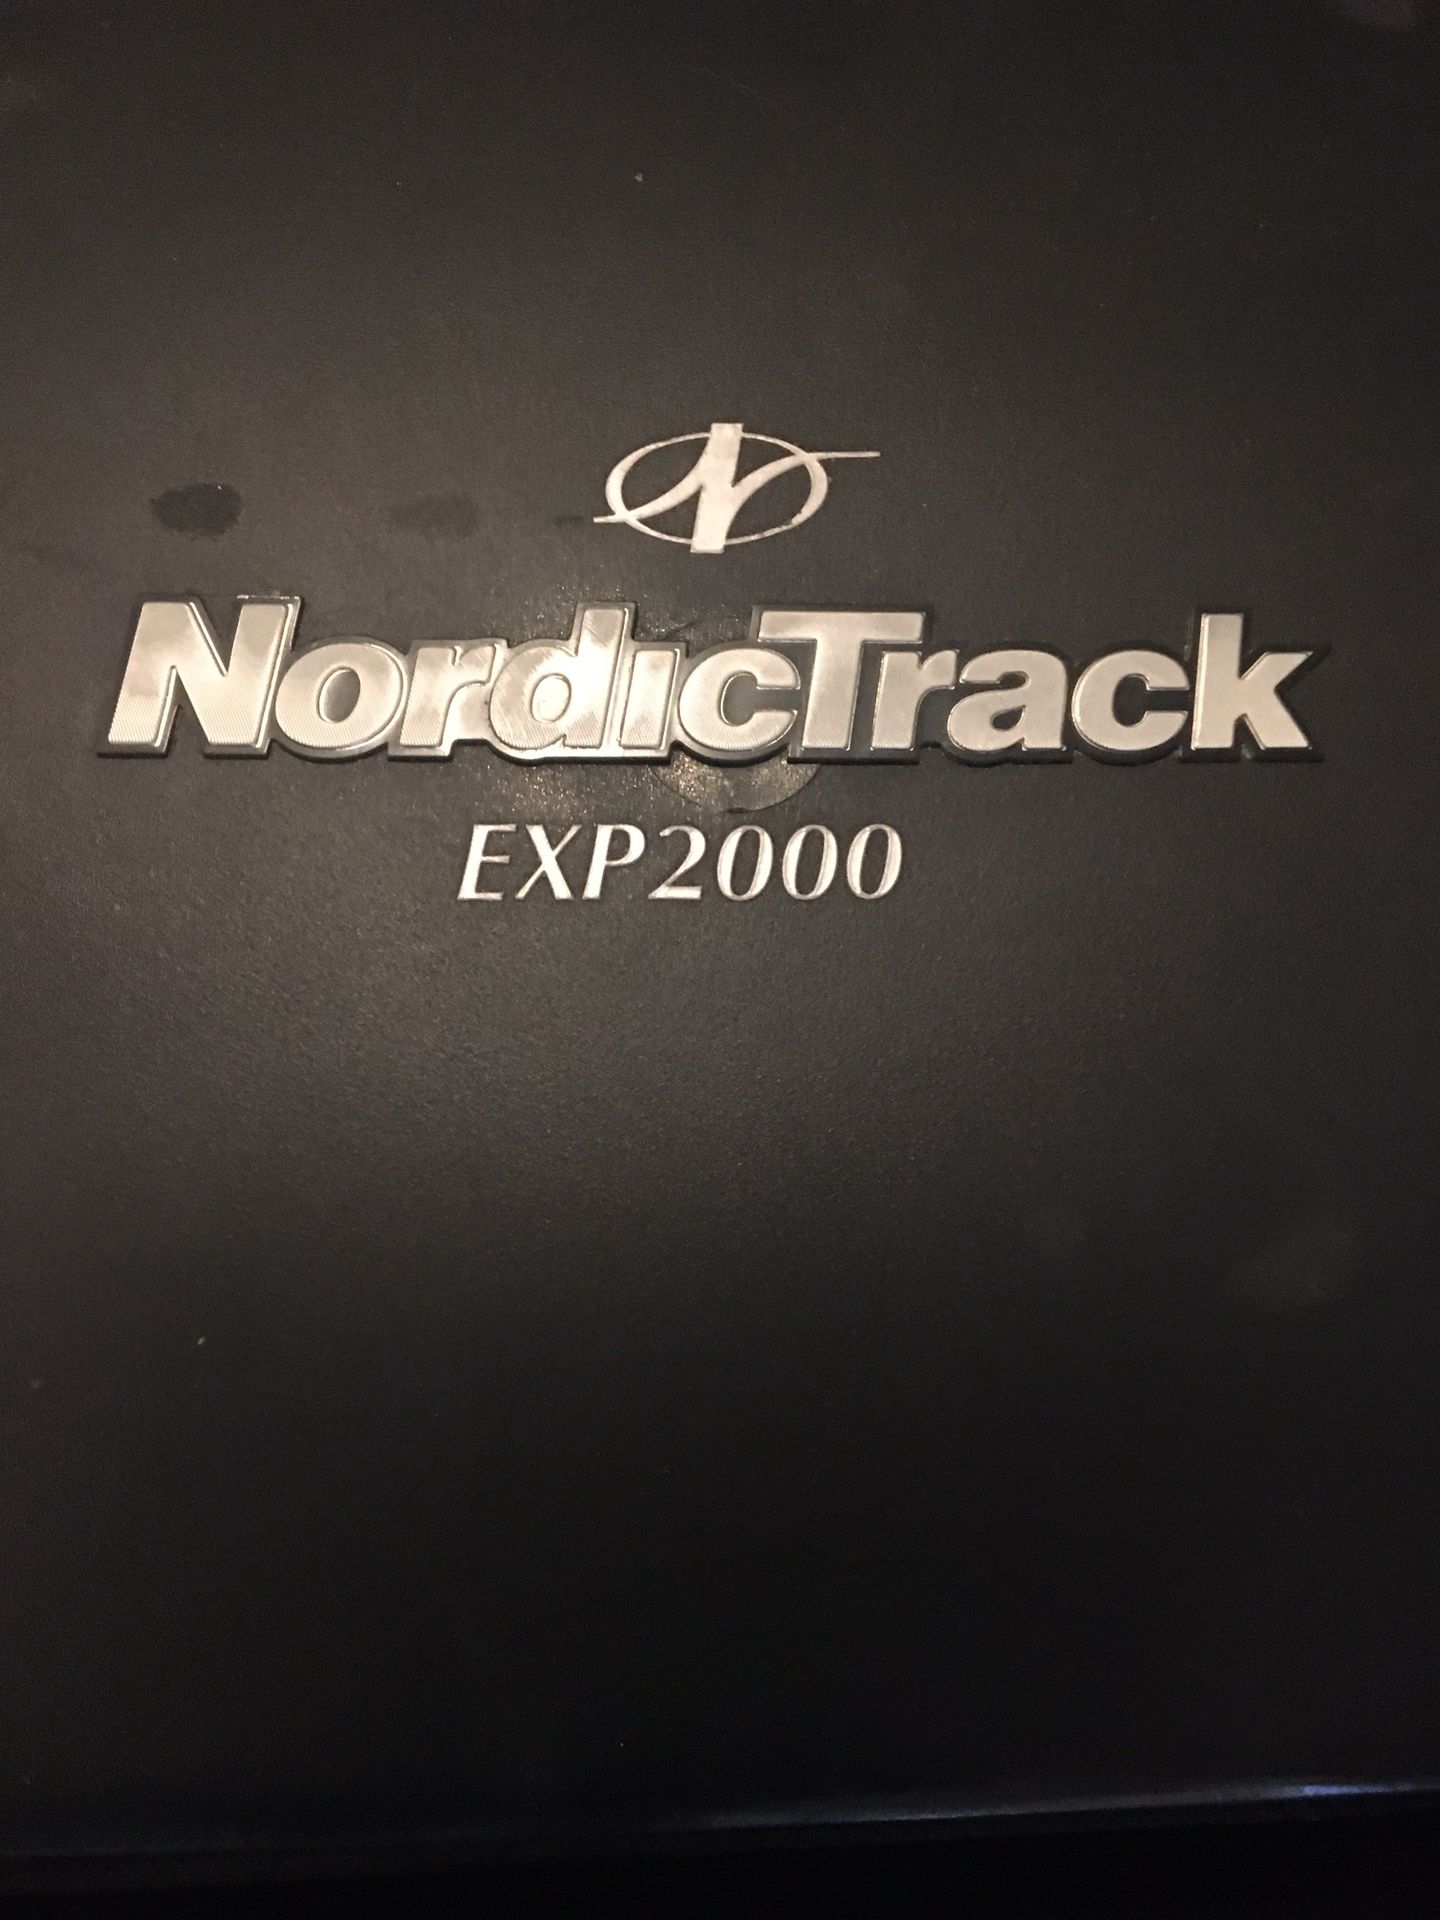 Nordictrack exp2000 treadmill